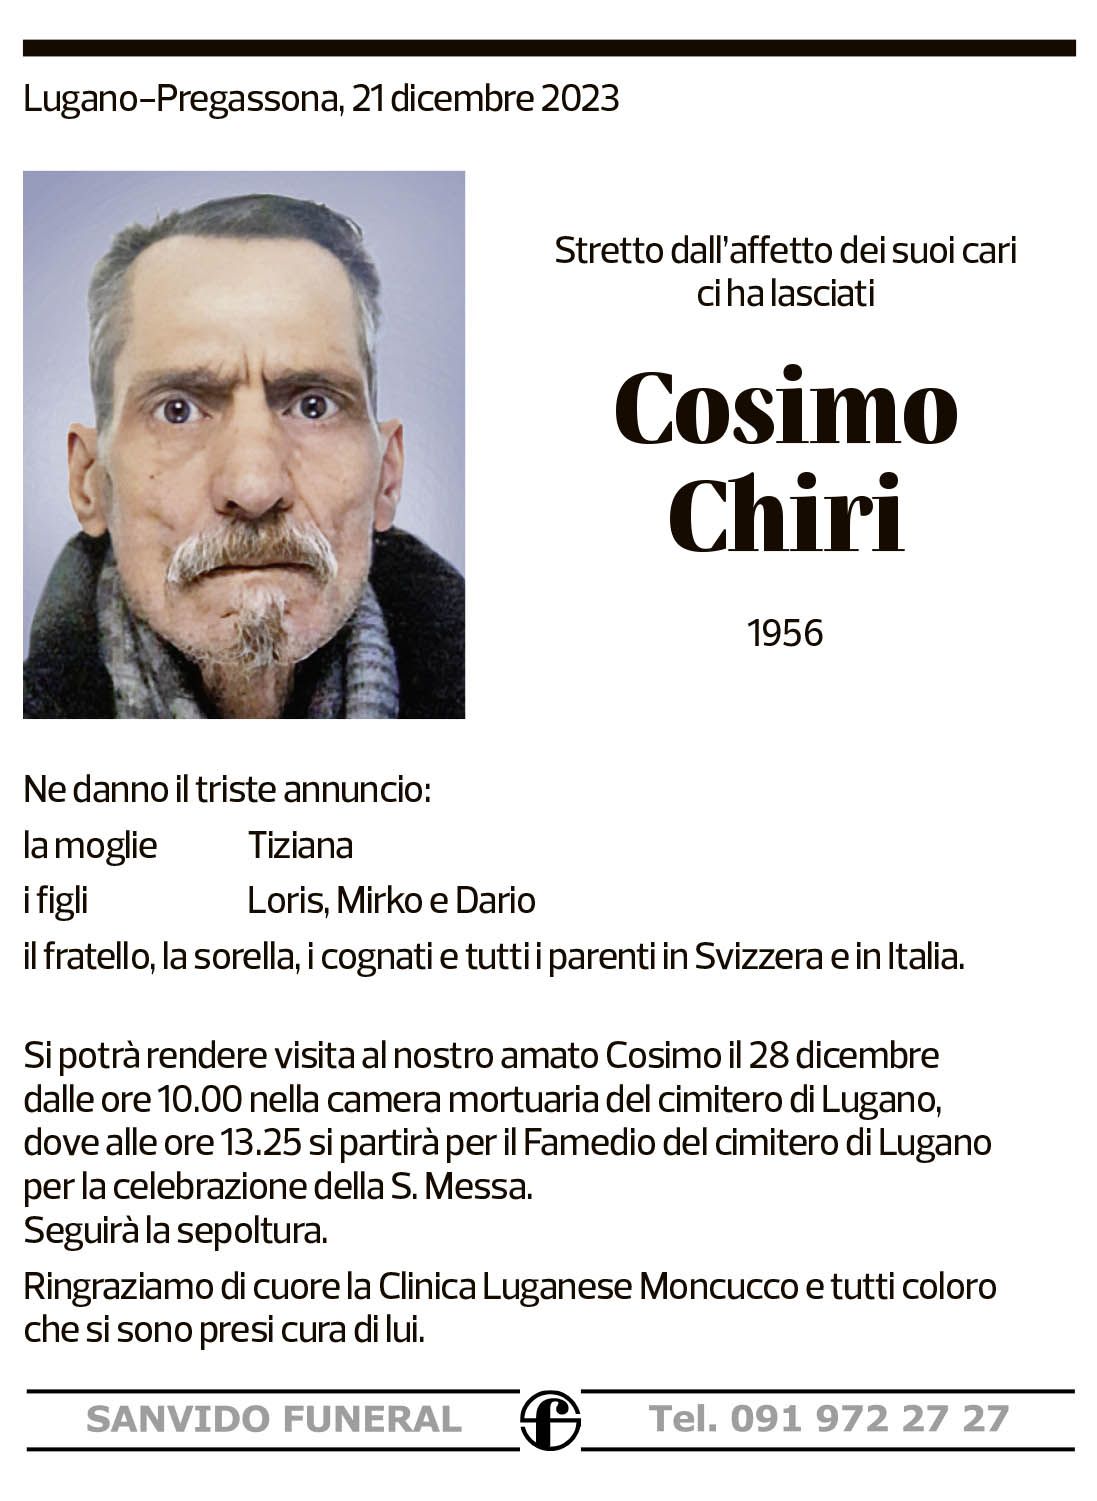 Annuncio funebre Cosimo Chiri